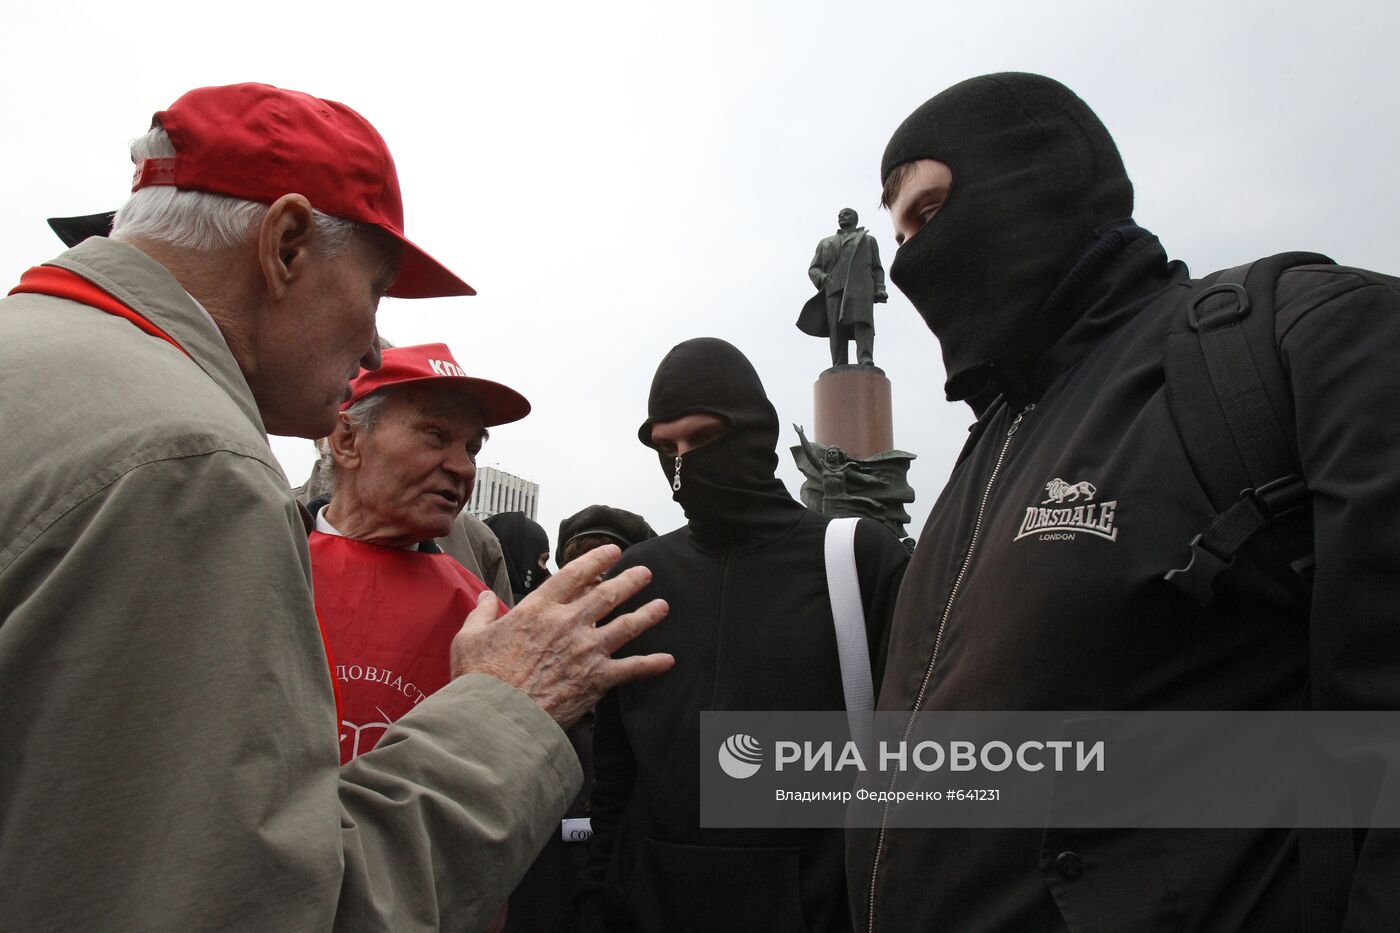 Первомайская демонстрация в Москве